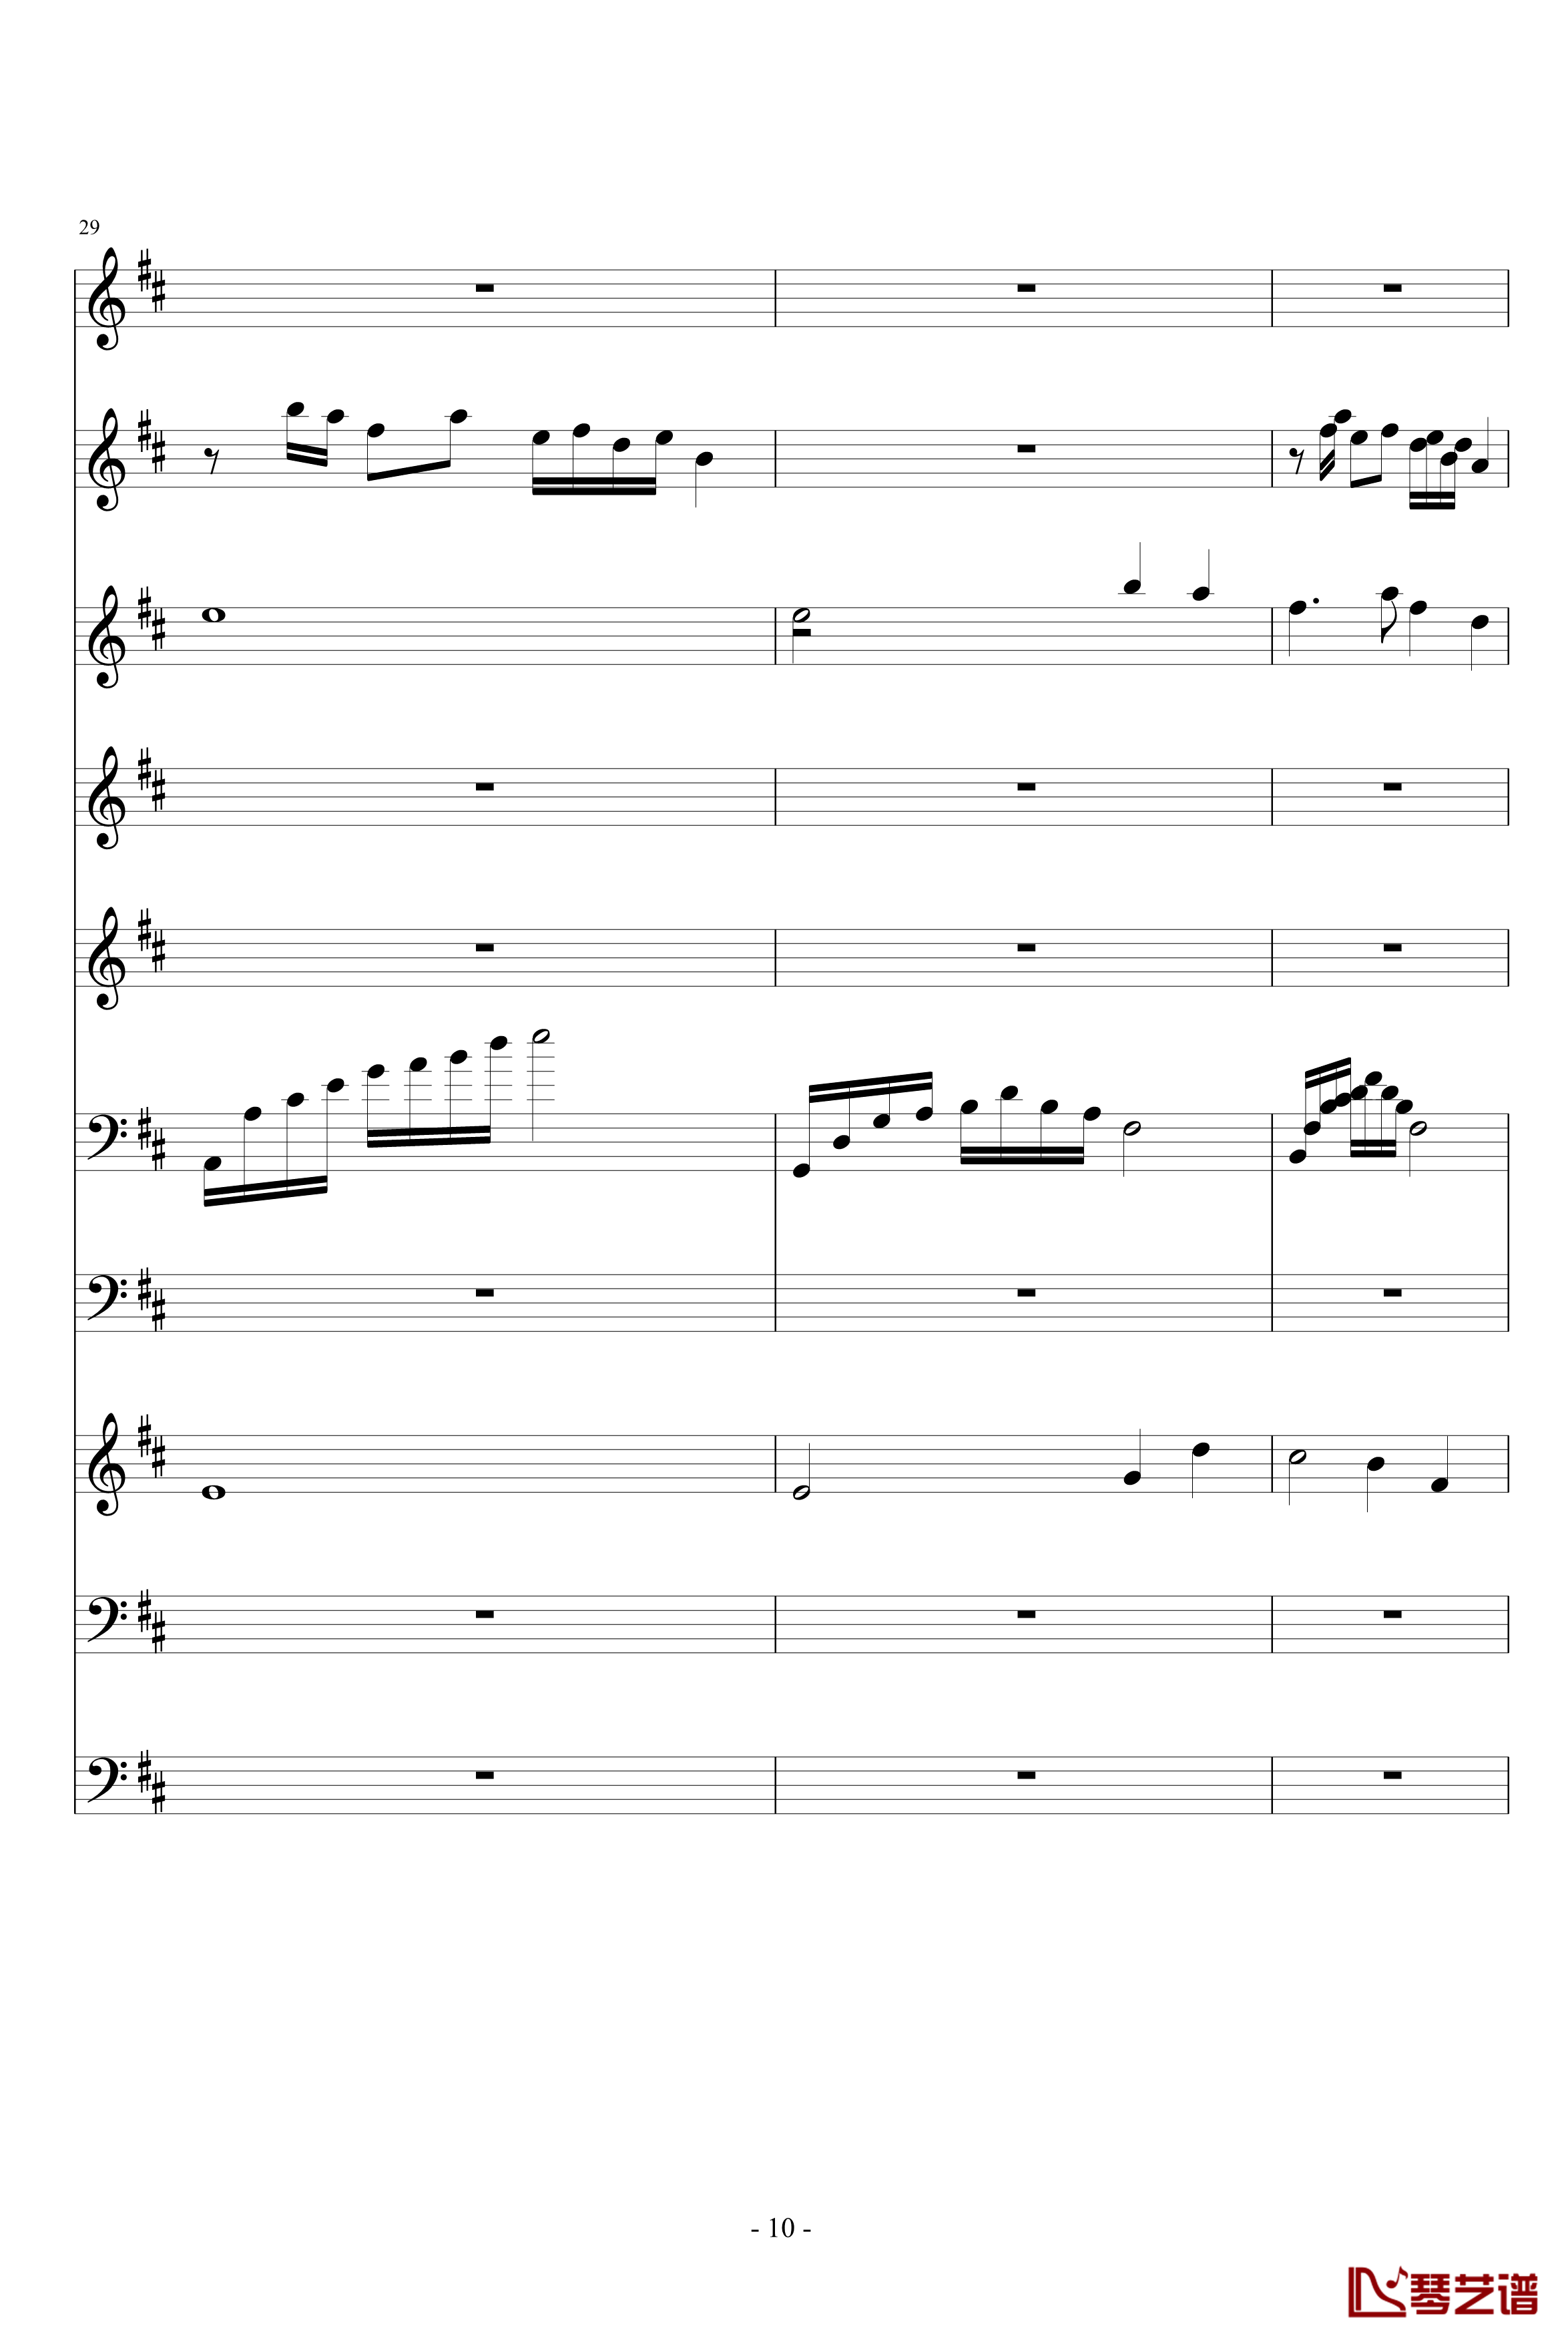 月落暗香坡钢琴谱-巴乌、笛子、琵琶、二胡、古筝-peterkingily